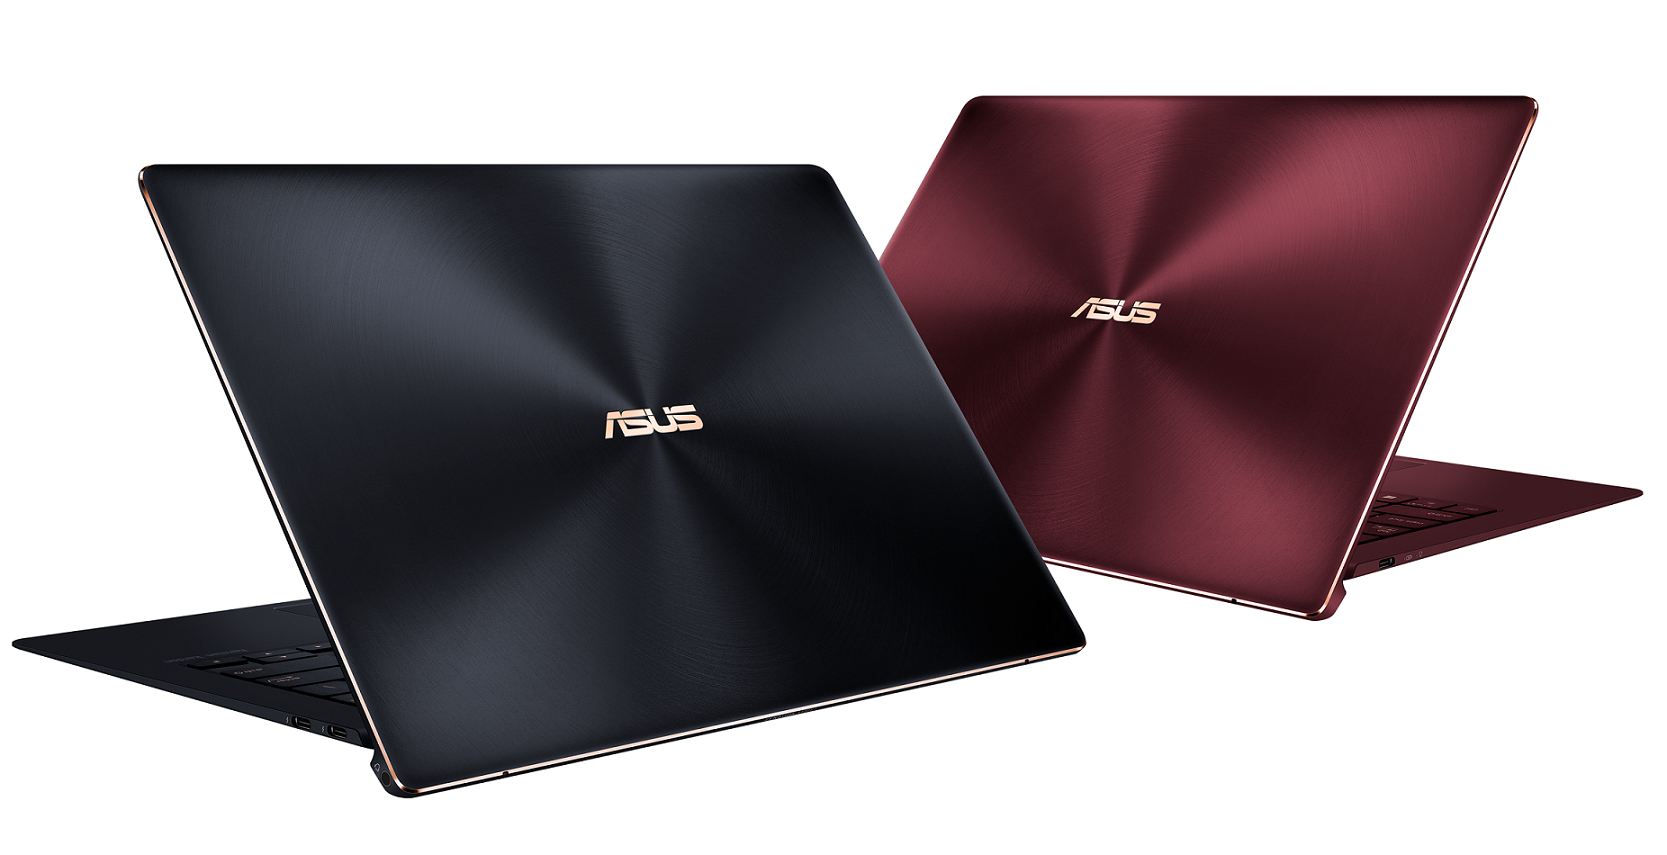 ASUS anuncia la nueva serie ZenBook en IFA 2018